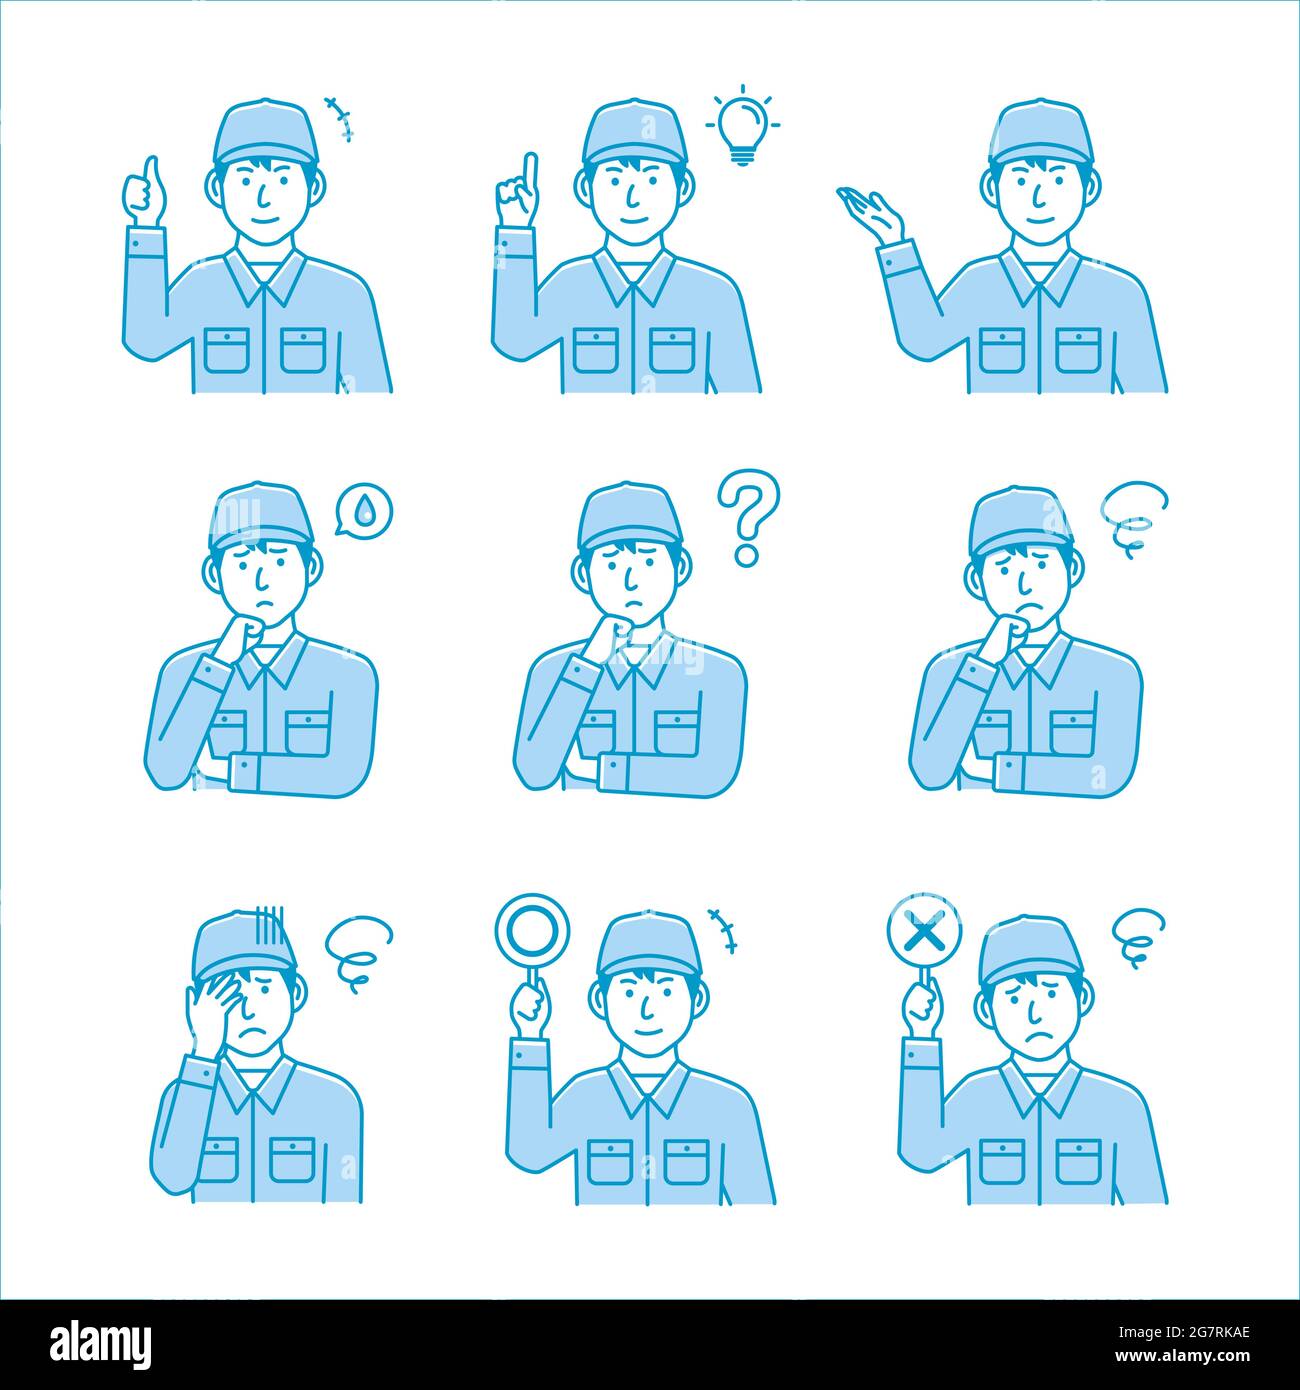 Male blue collar worker gesture variation illustration set Stock Vector